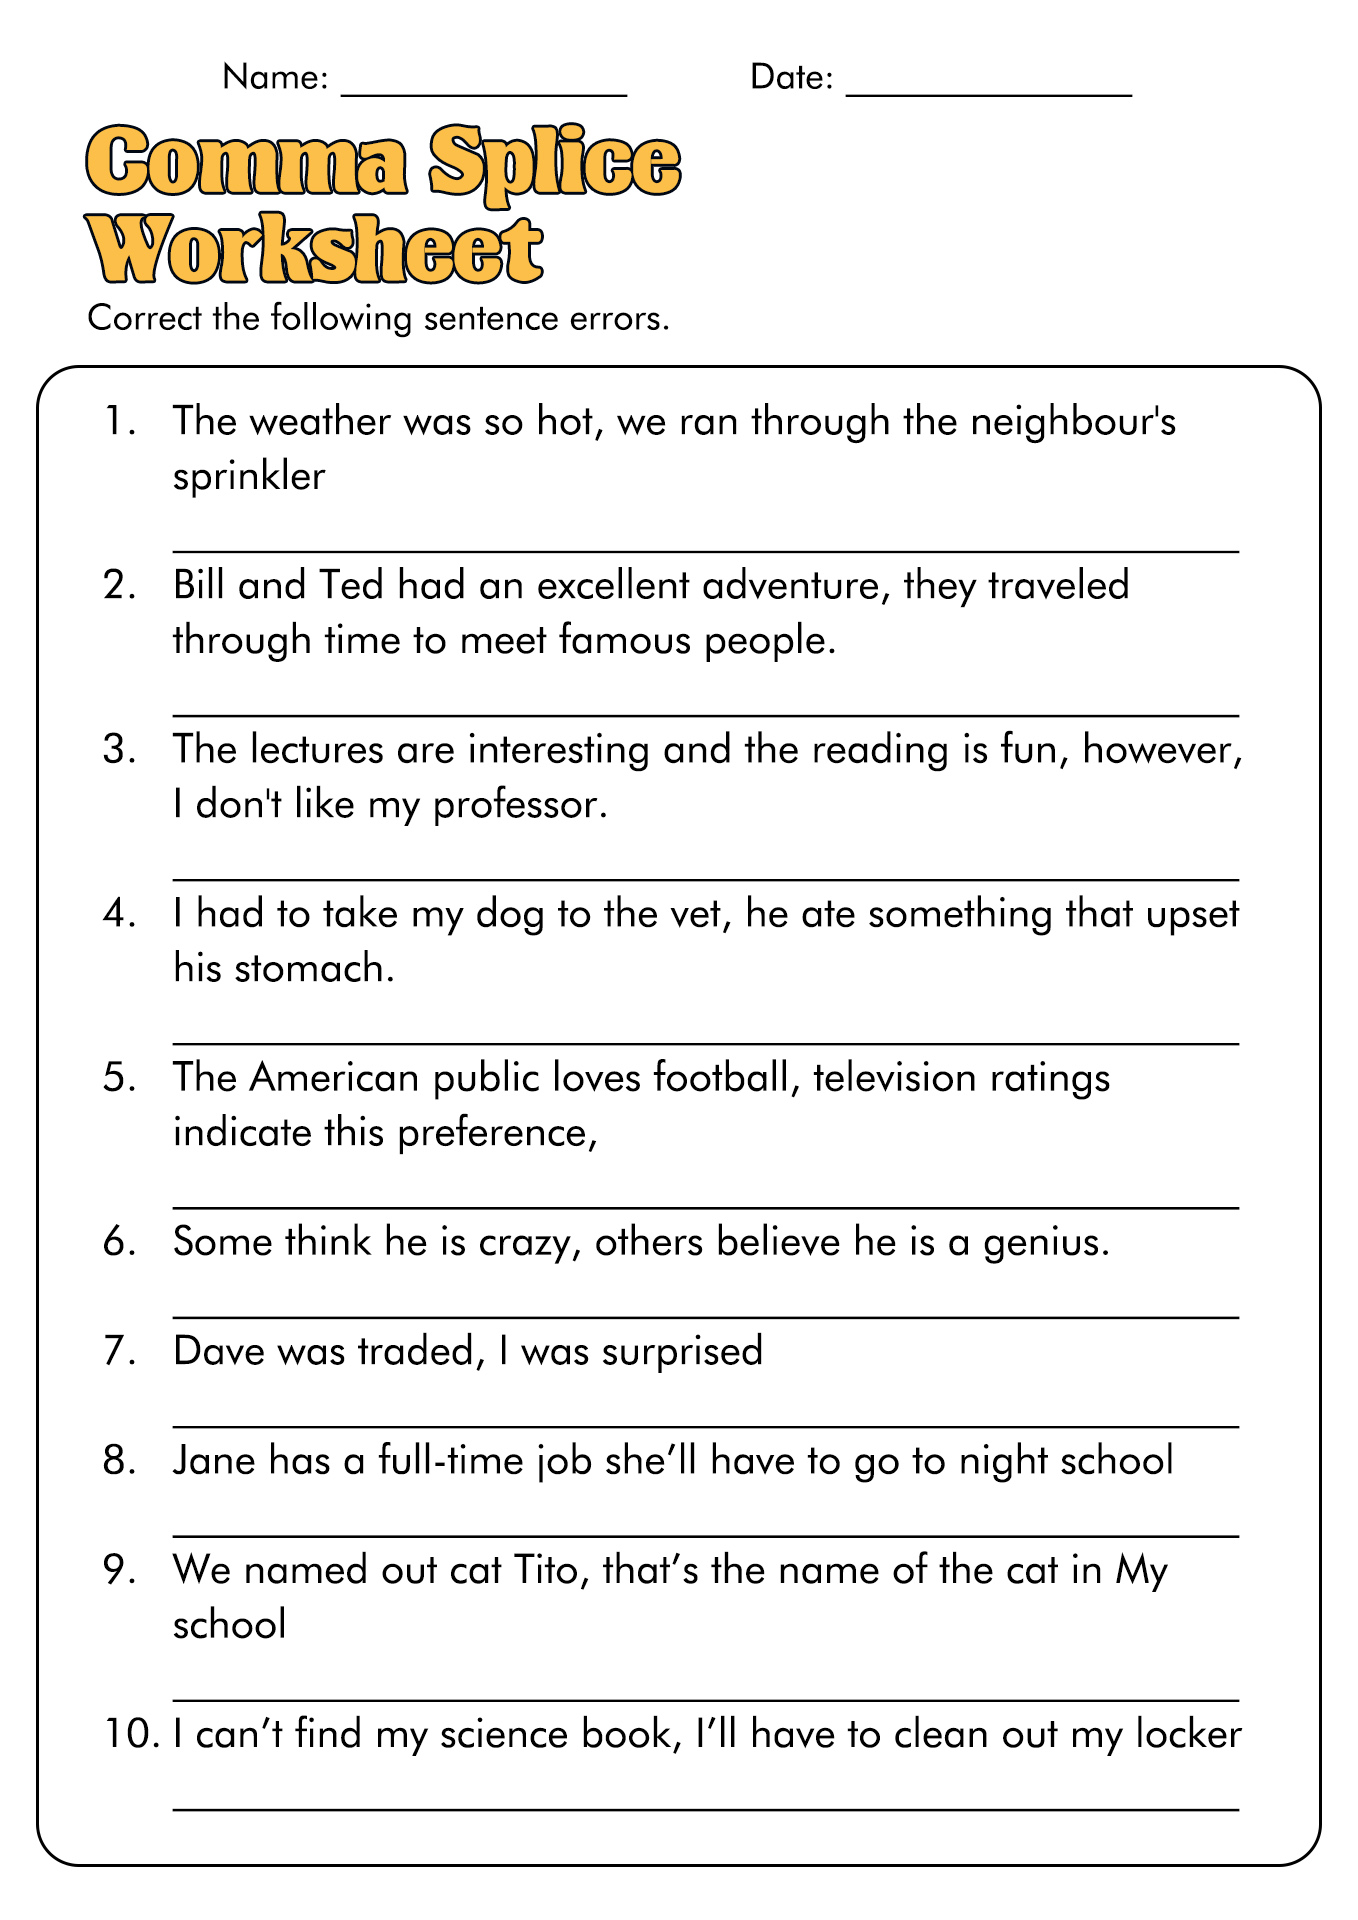 17 Best Images of Comma Practice Worksheets - Comma Splice Practice